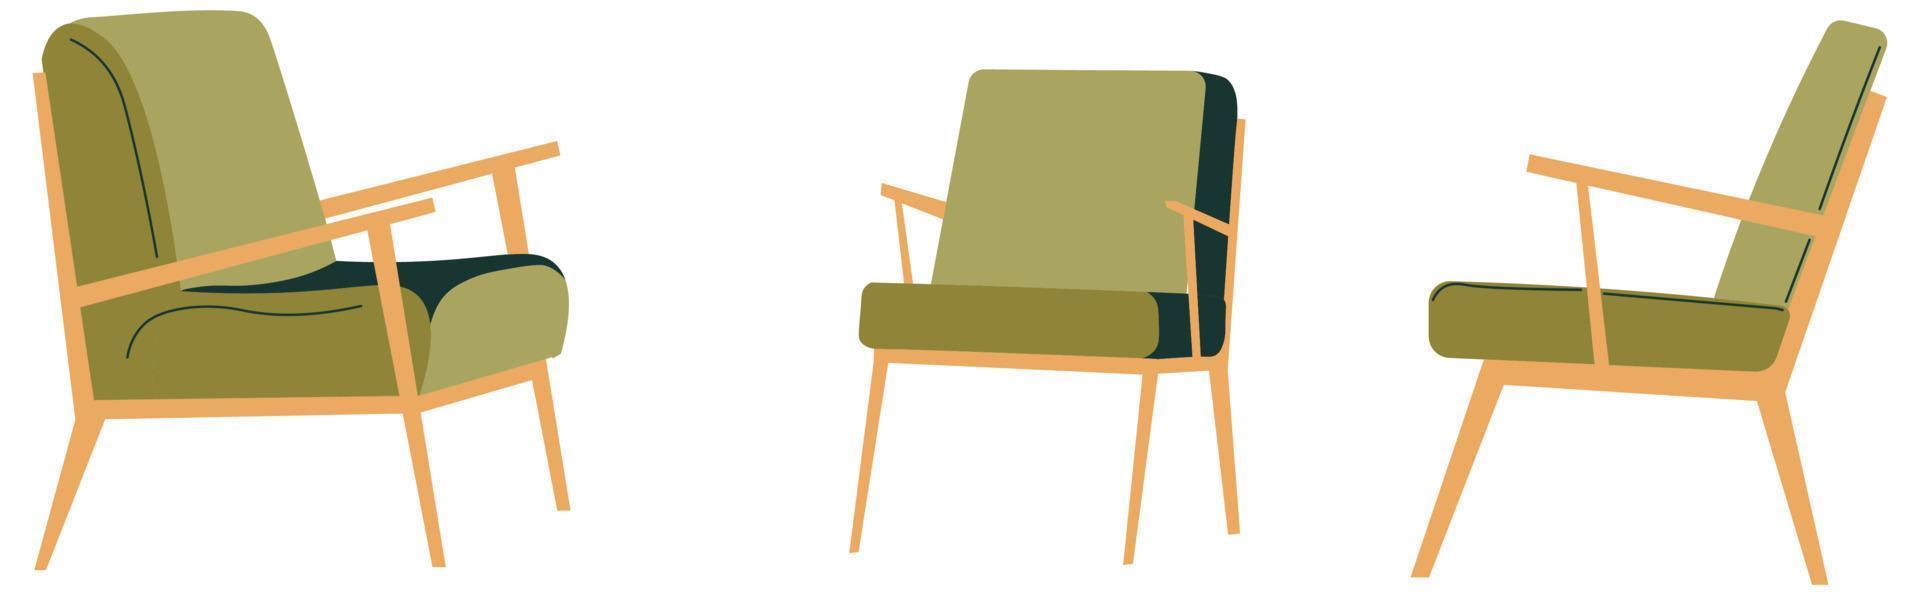 Retro-Sessel mit weichem Stoff und Holzsockel vektor